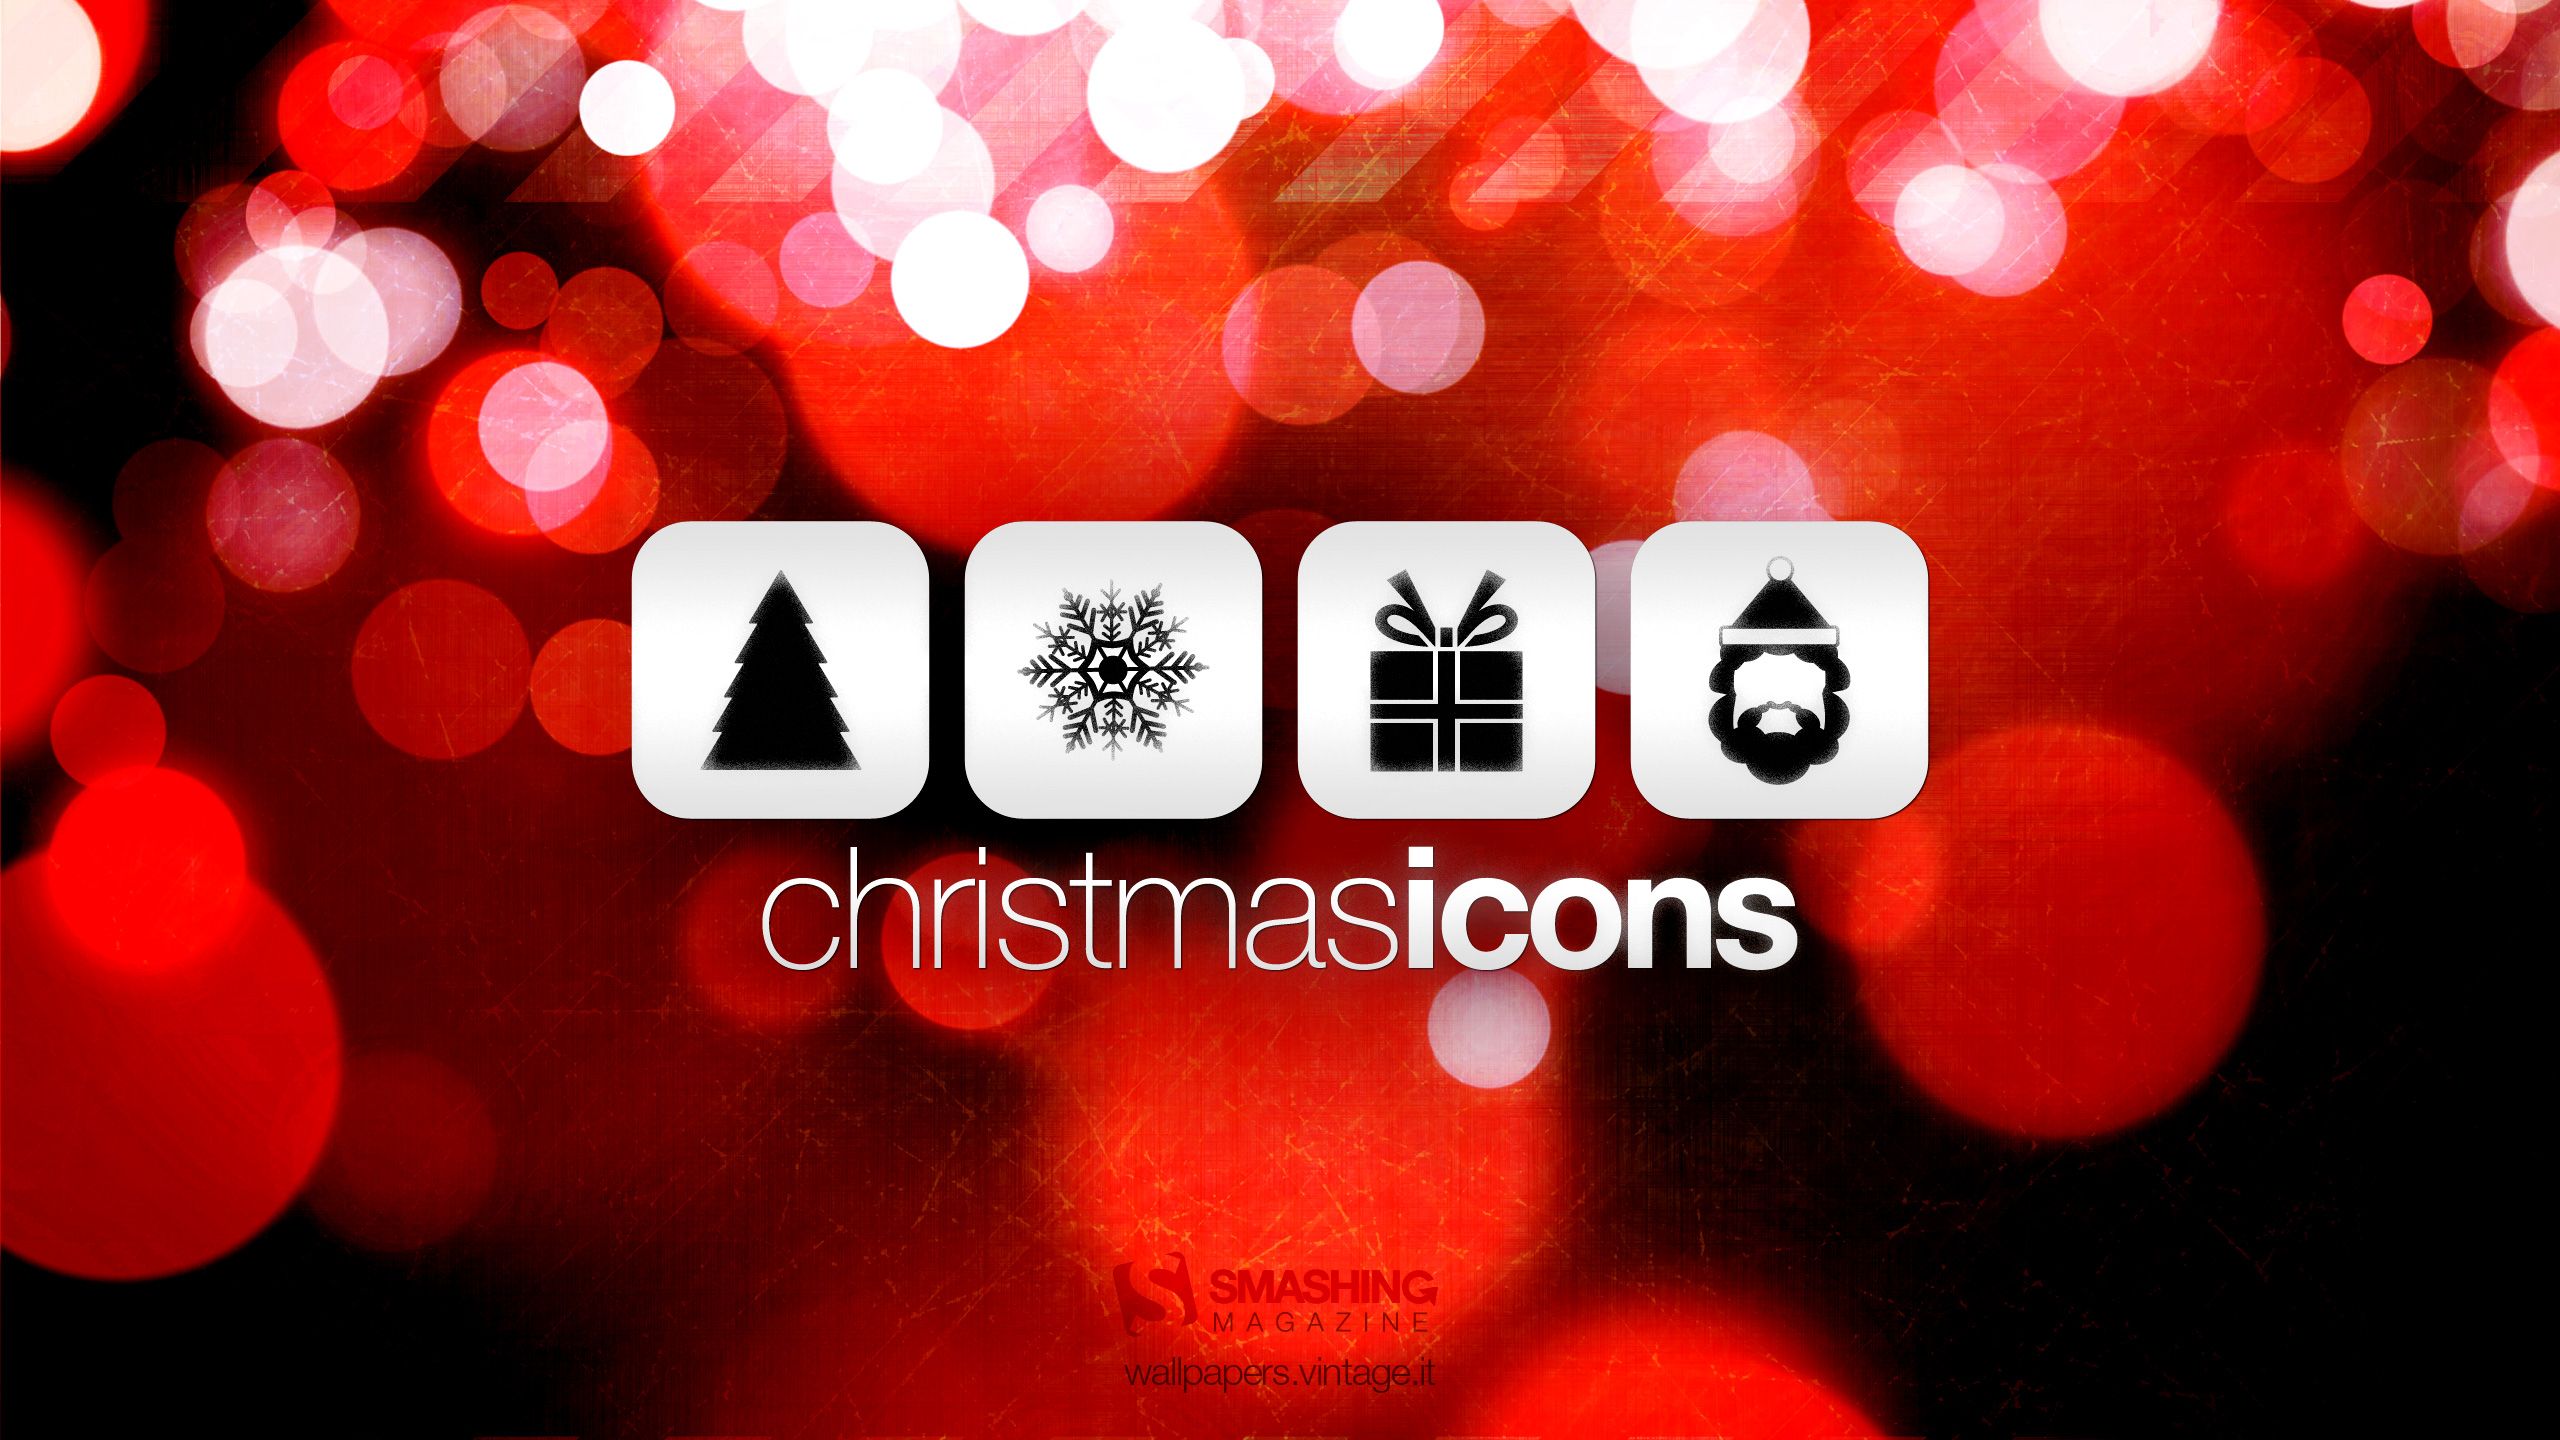 Christmas icons wallpaper. Christmas icons